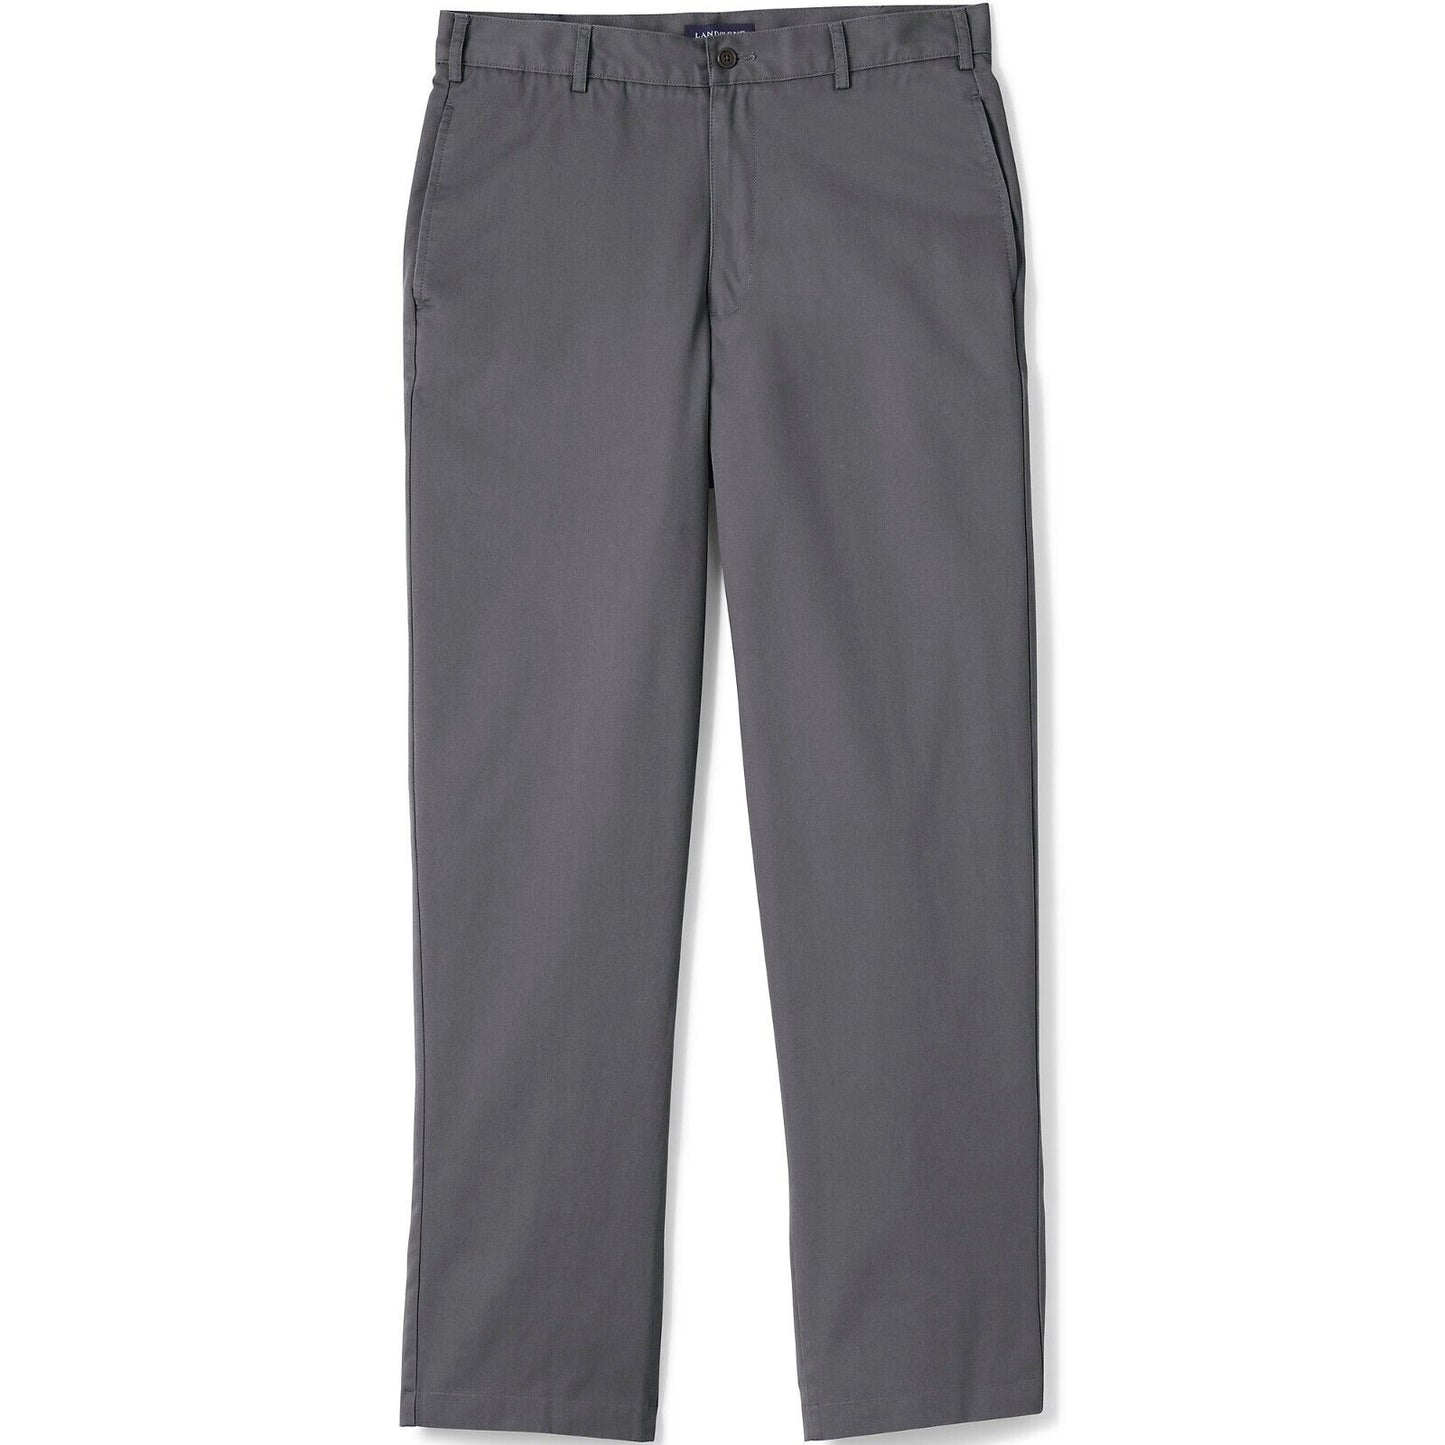 Men's Blend Plain Front Chino Pants Size 32